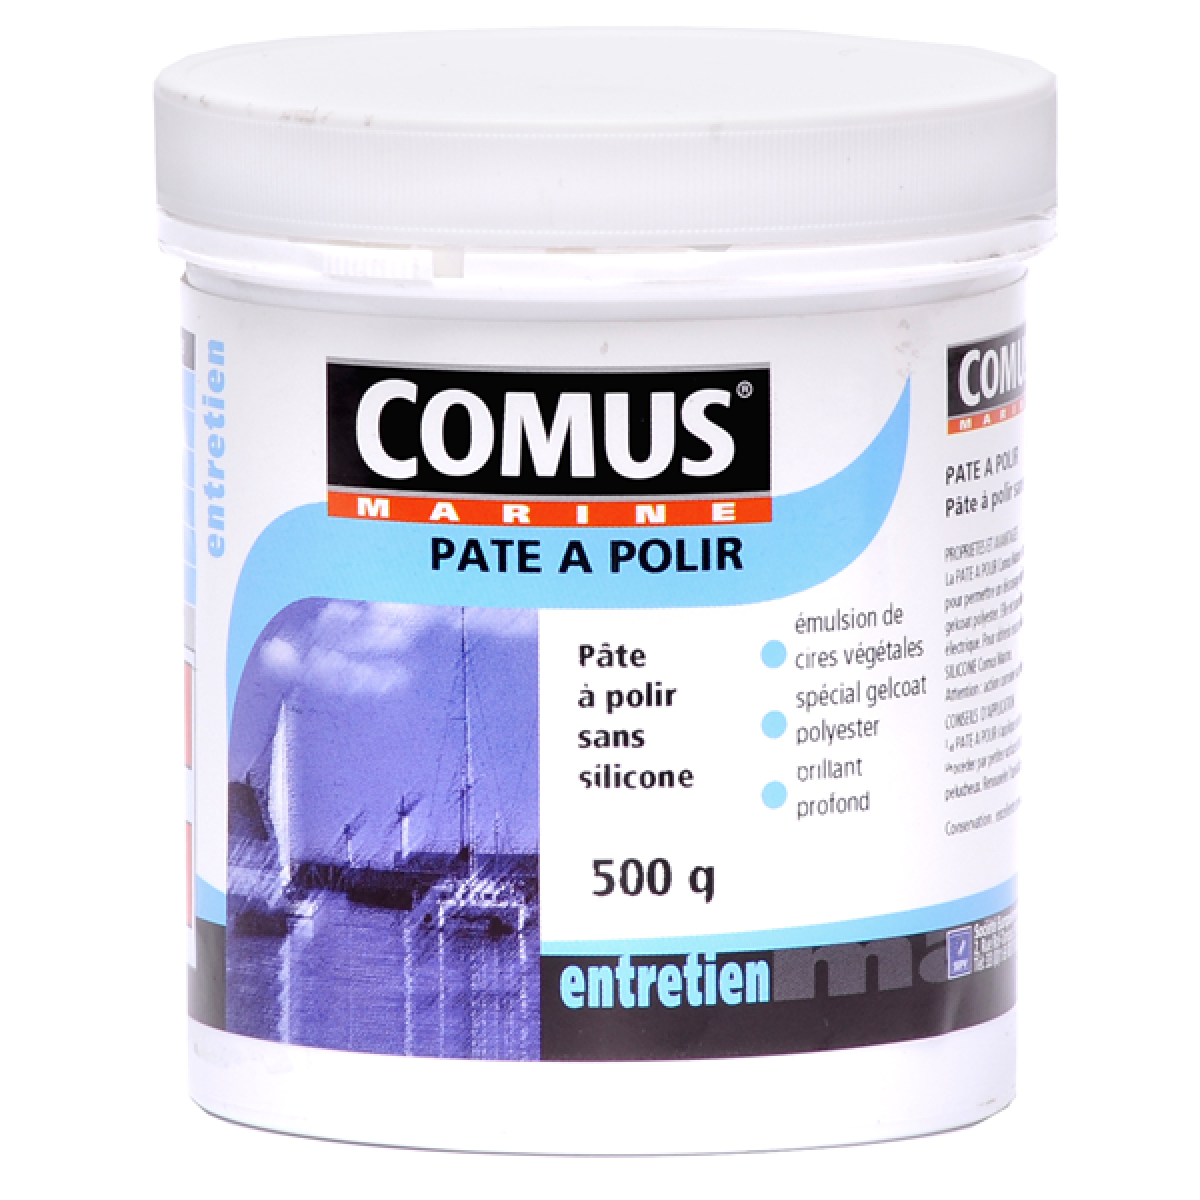 Comus - PATE A POLIR SANS SILICONE 500G - Pâte abrasive sans silicone à base de cires végétales - COMUS MARINE - Mastic, silicone, joint